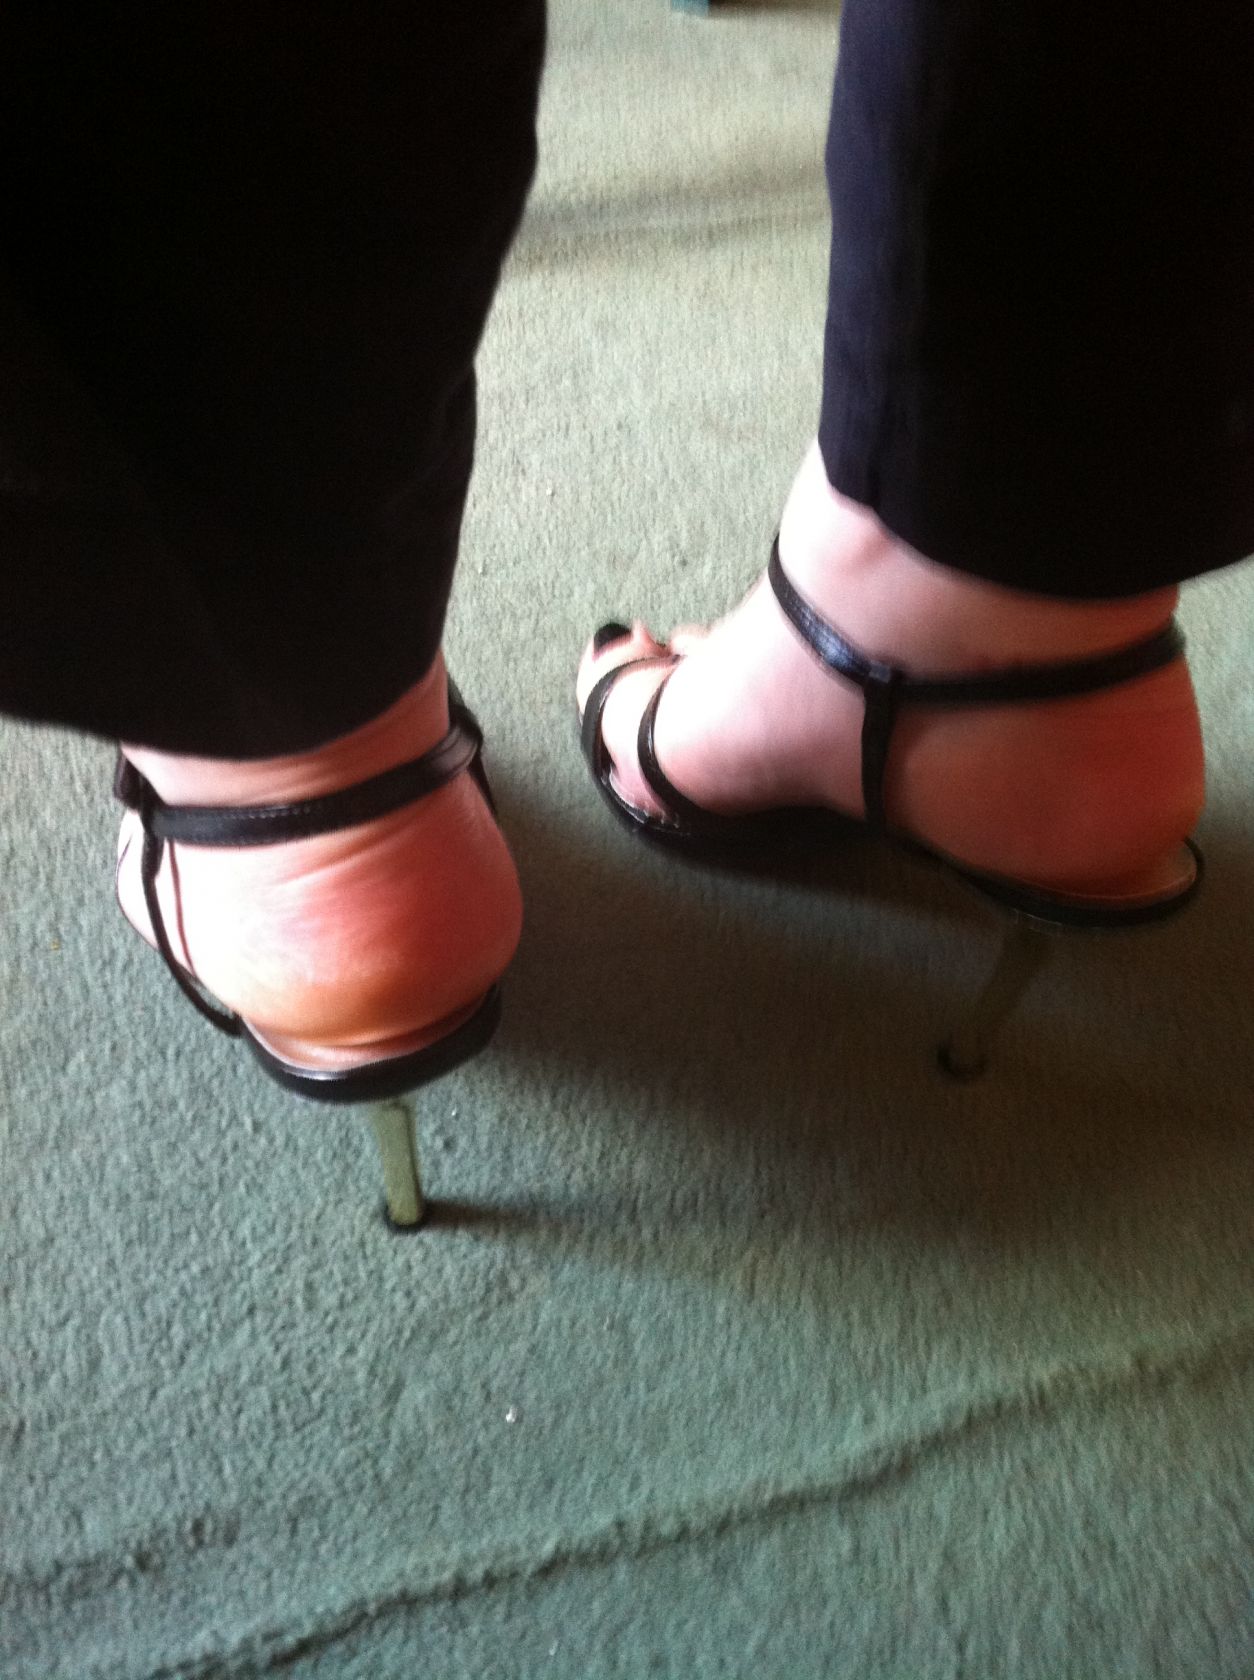 My wife's heels25